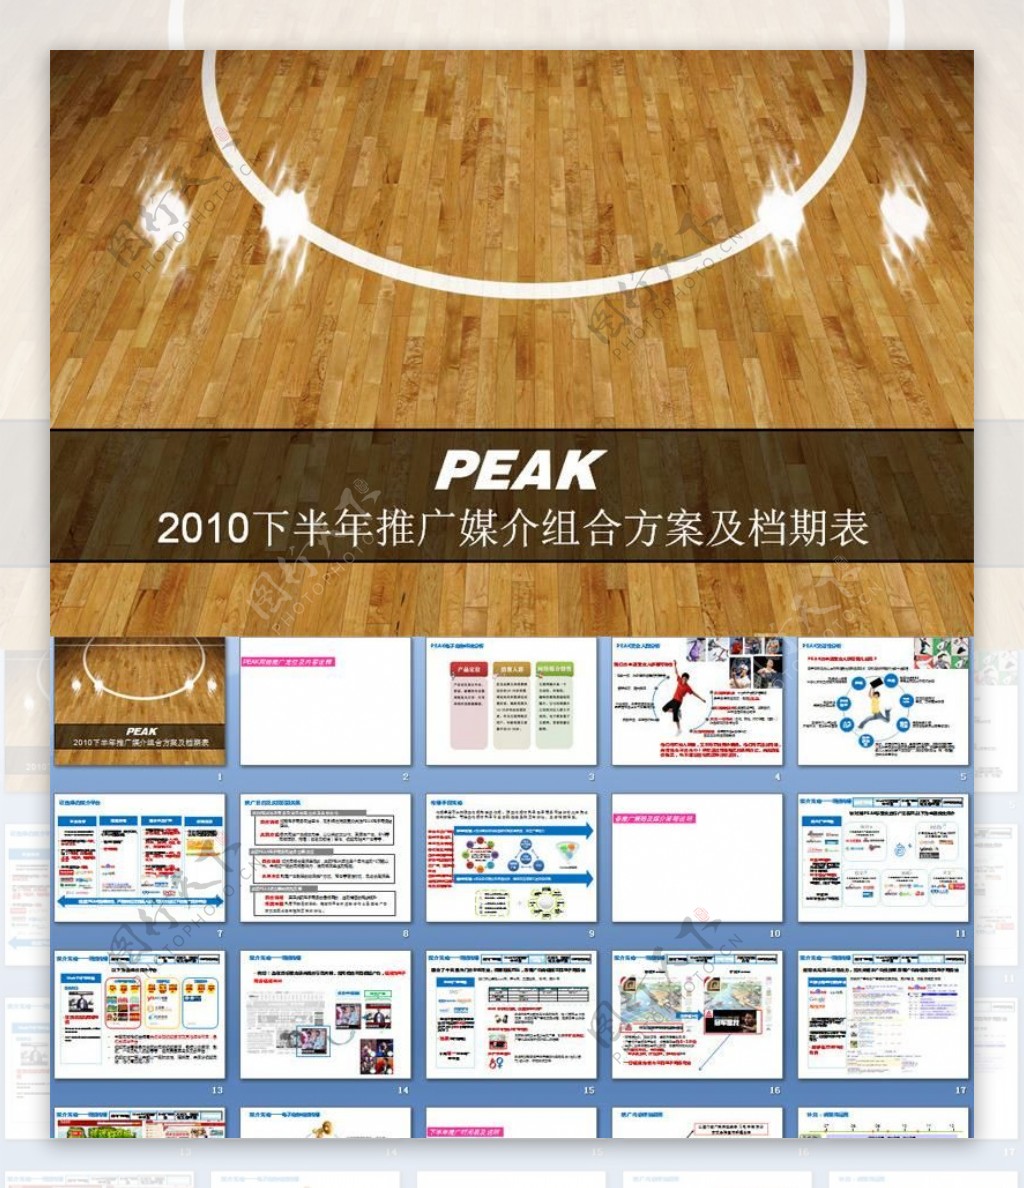 peak2010下半年推广媒介组合方案及档期表图片